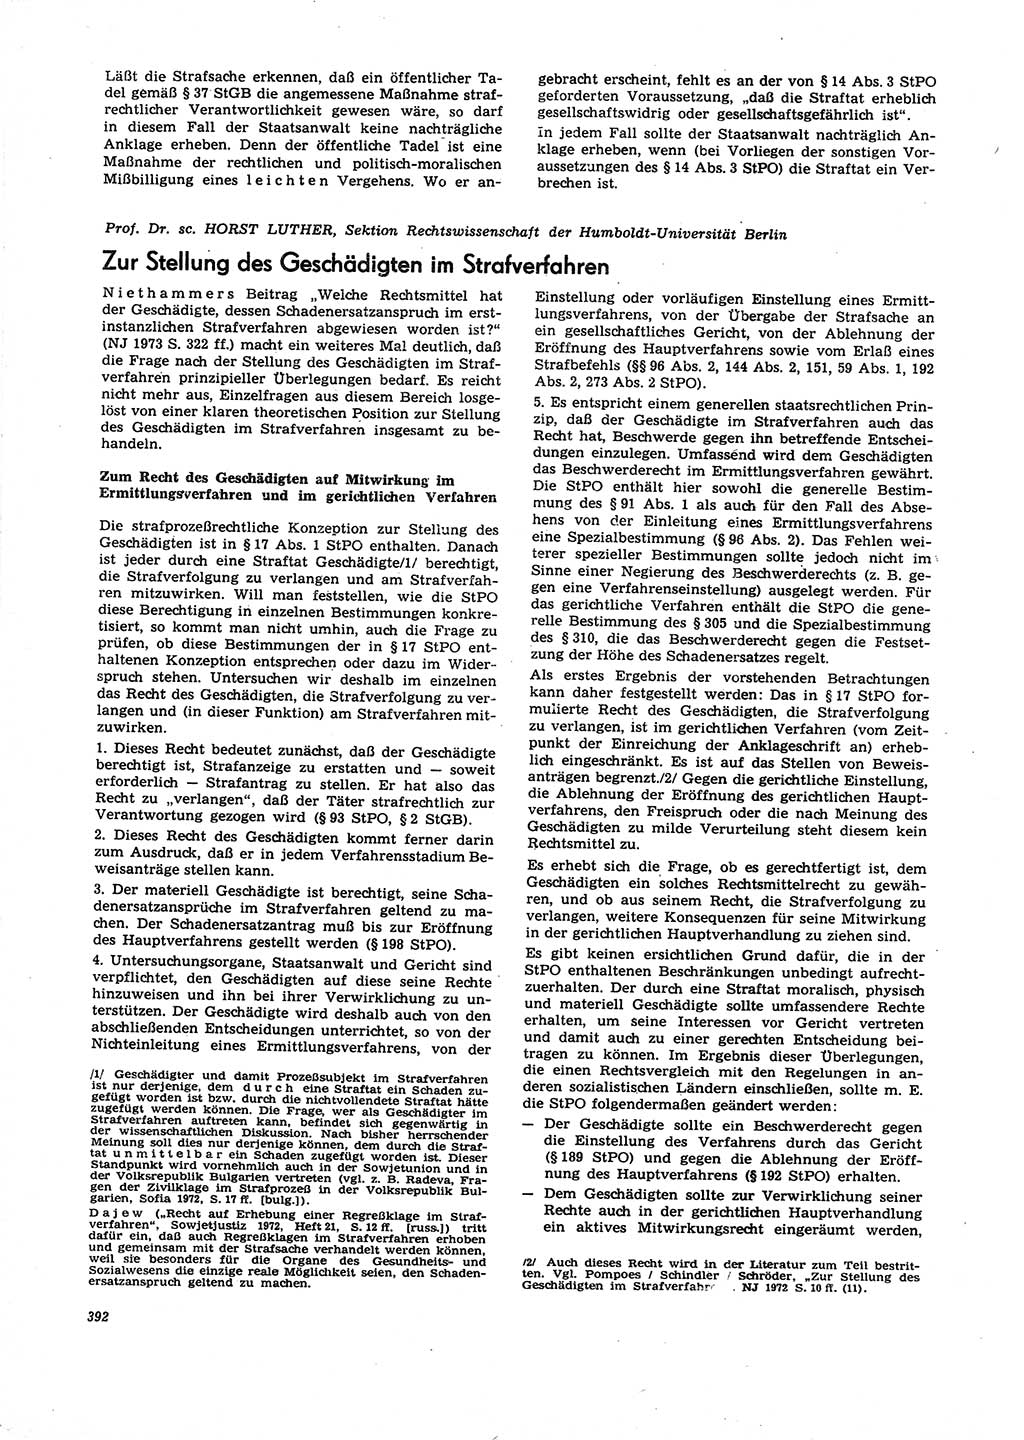 Neue Justiz (NJ), Zeitschrift für Recht und Rechtswissenschaft [Deutsche Demokratische Republik (DDR)], 27. Jahrgang 1973, Seite 392 (NJ DDR 1973, S. 392)